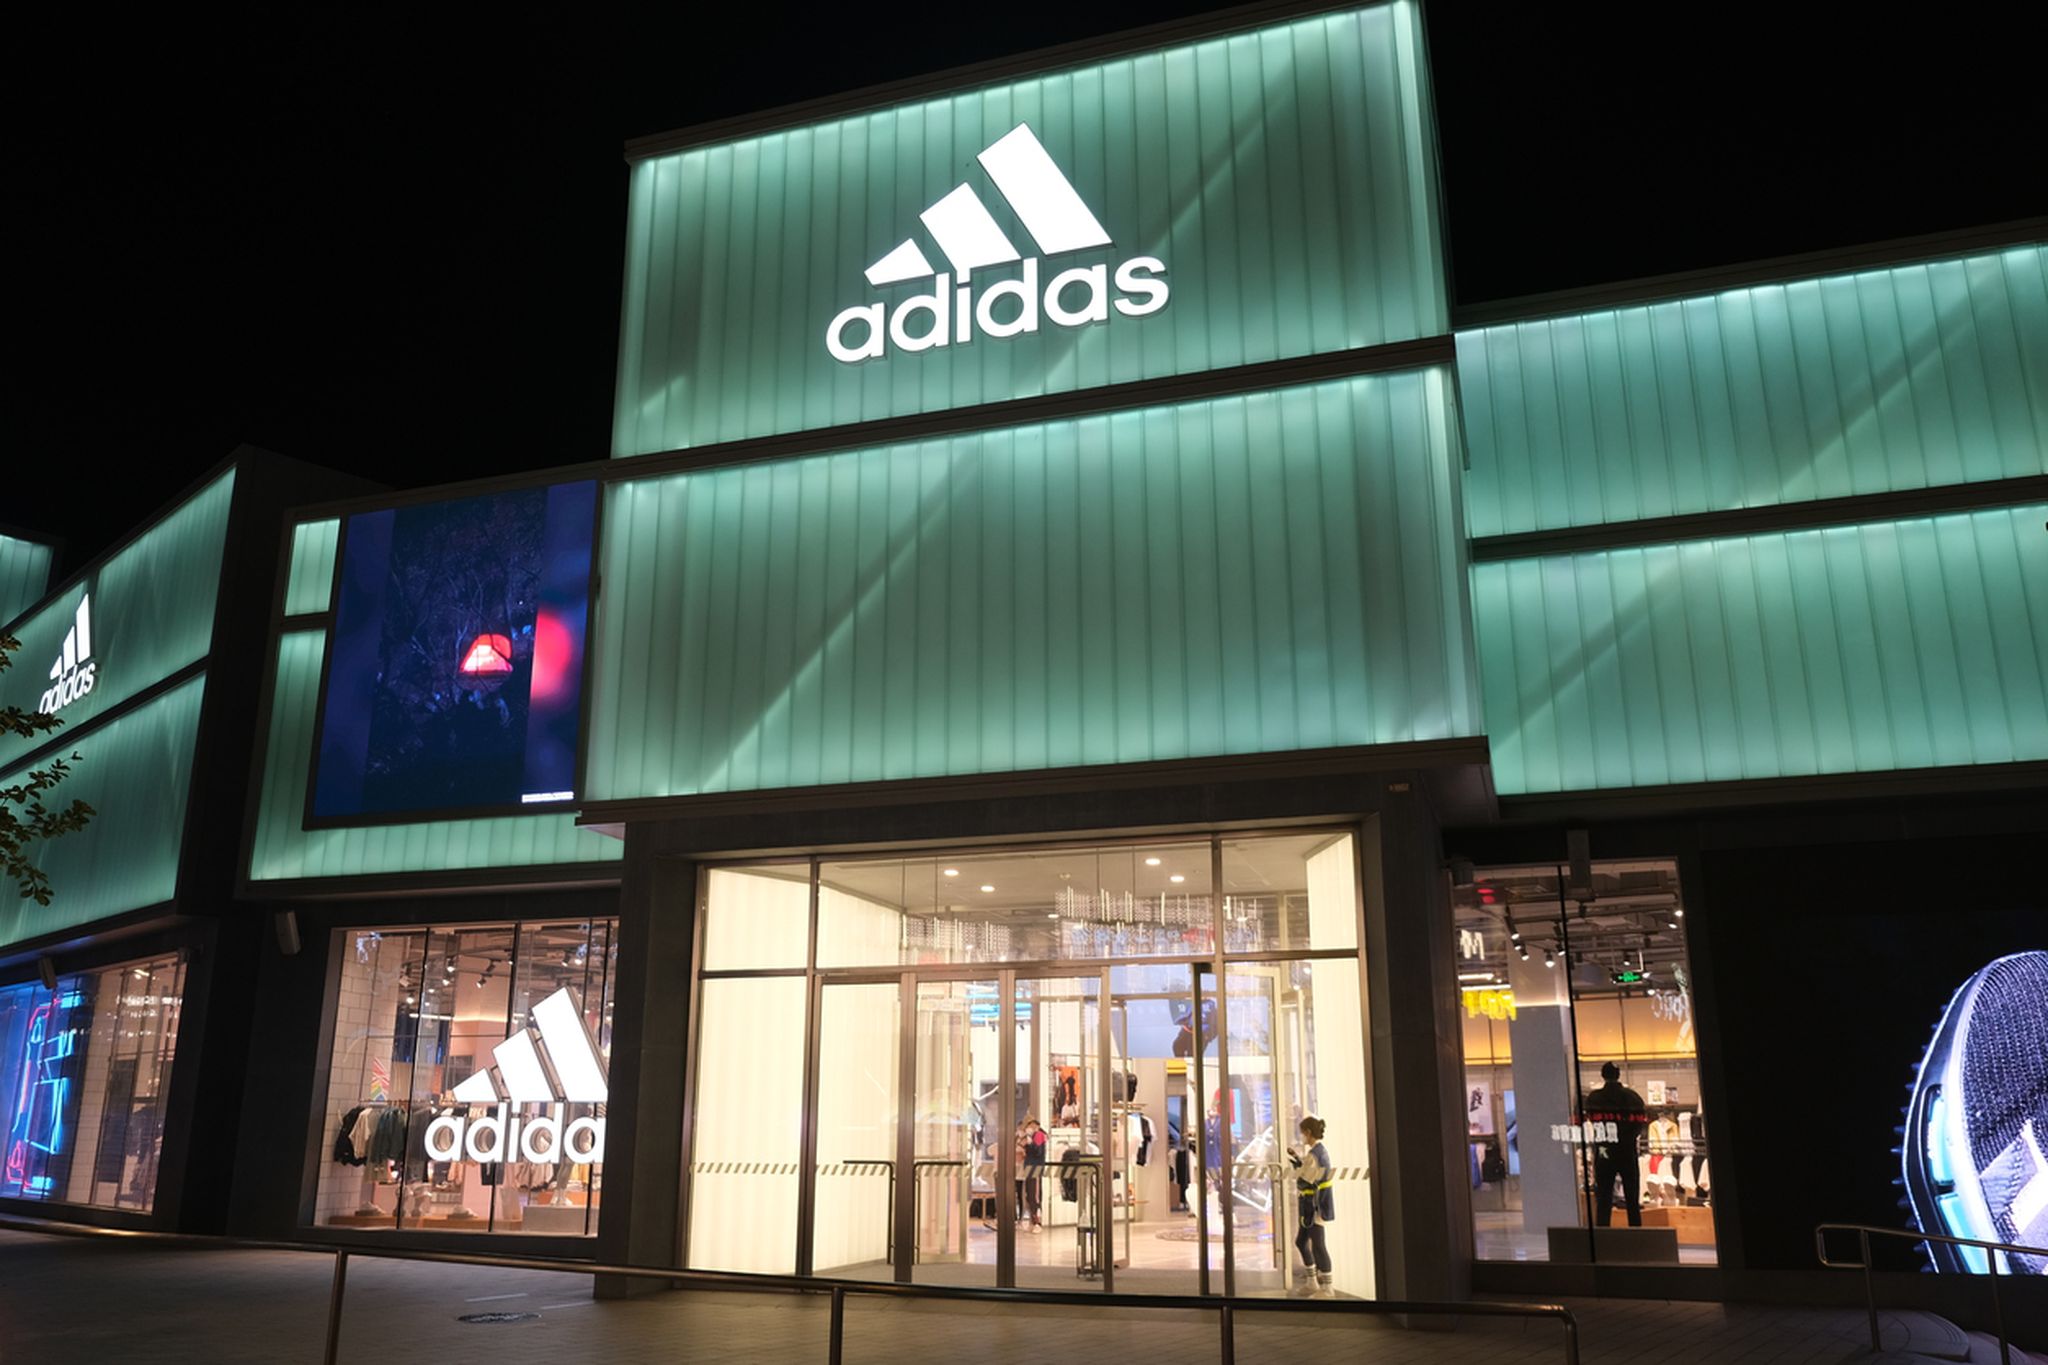 Handelsmerk mager pik Adidas breekt door opgehoogd steunpunt | Tostrams.nl